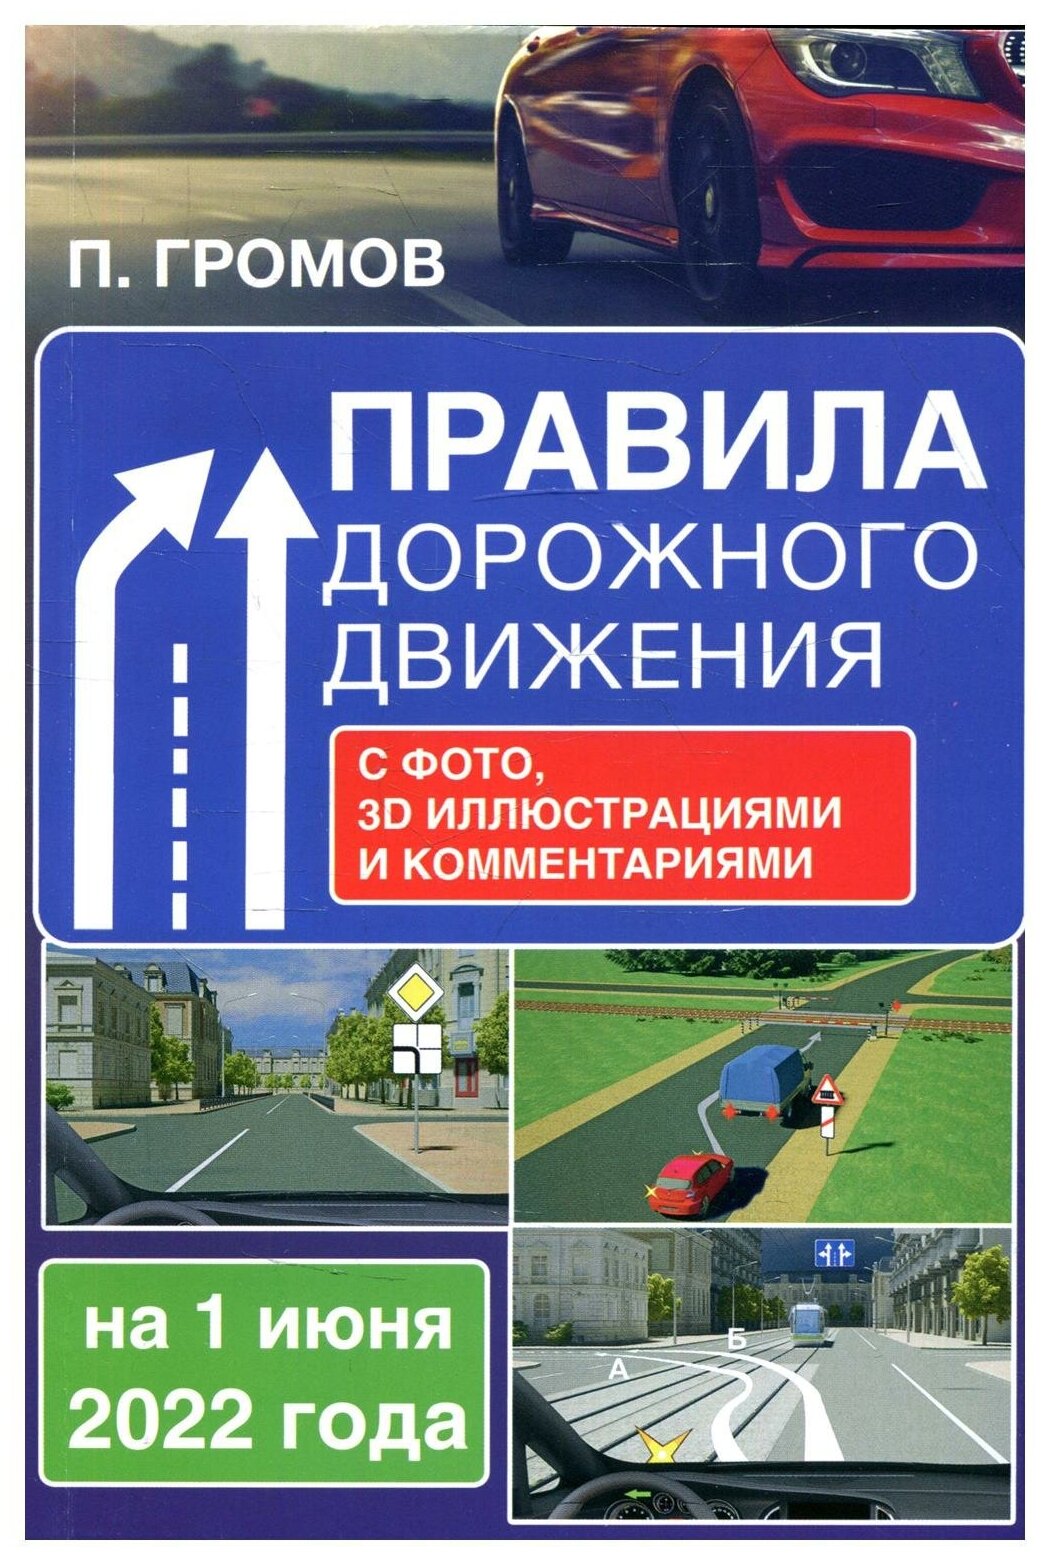 Правила дорожного движения с фото, 3D иллюстрациями и комментариями на 1 июня 2022 года - фото №1